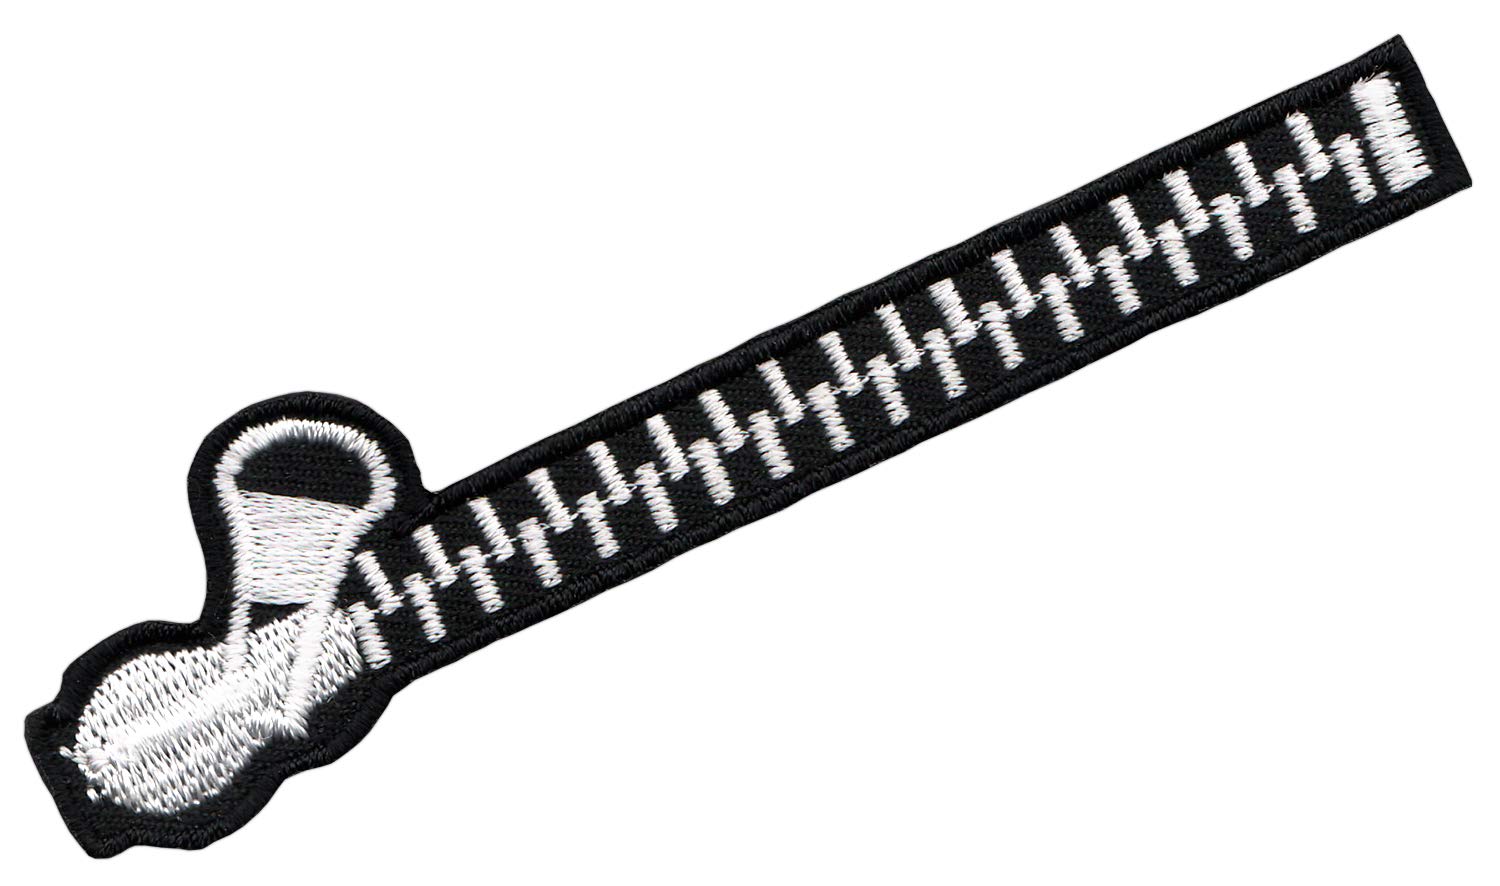 Bestellmich gestickter Reißverschluss Aufnäher Bügelbild Patch Applikation Größe 9,5 x 2,0 cm von Bestellmich